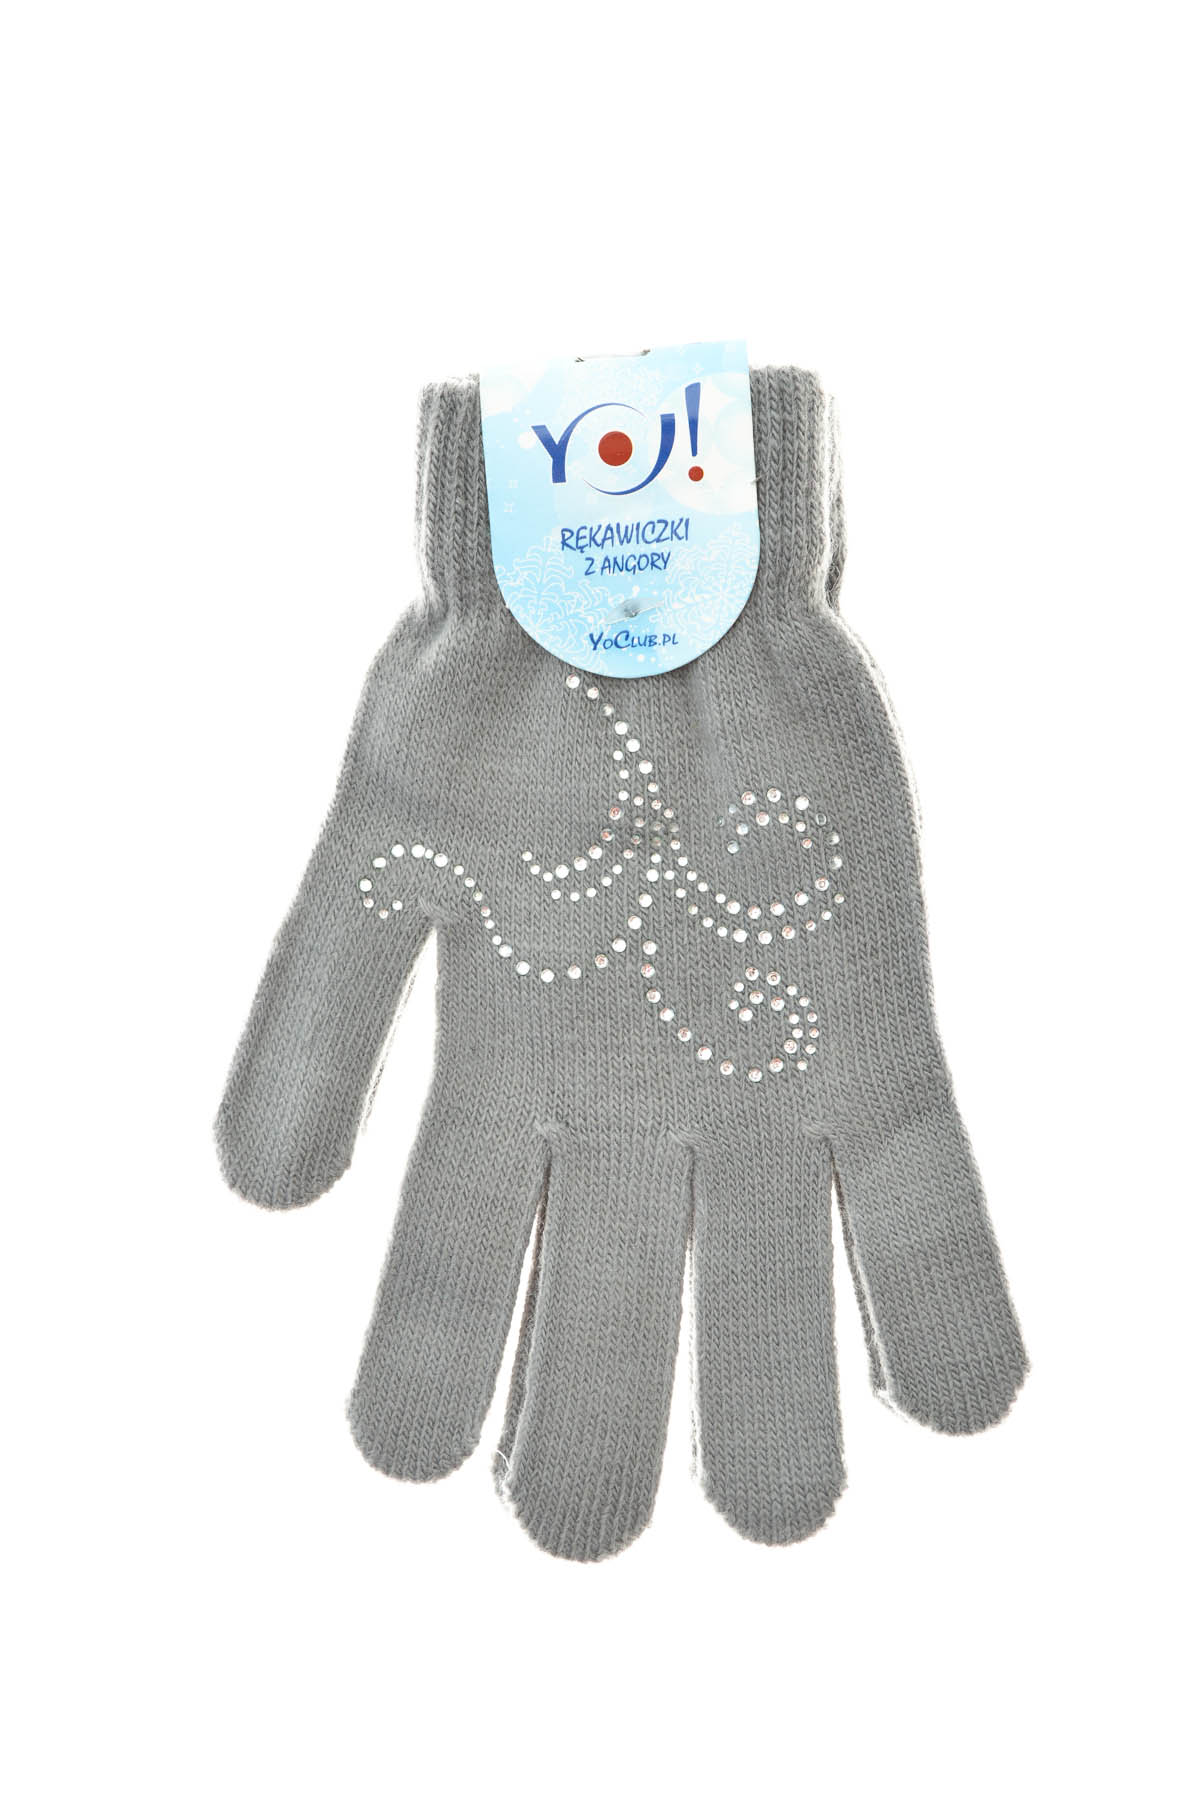 Παιδικά γάντια - Yo! CLub - 2